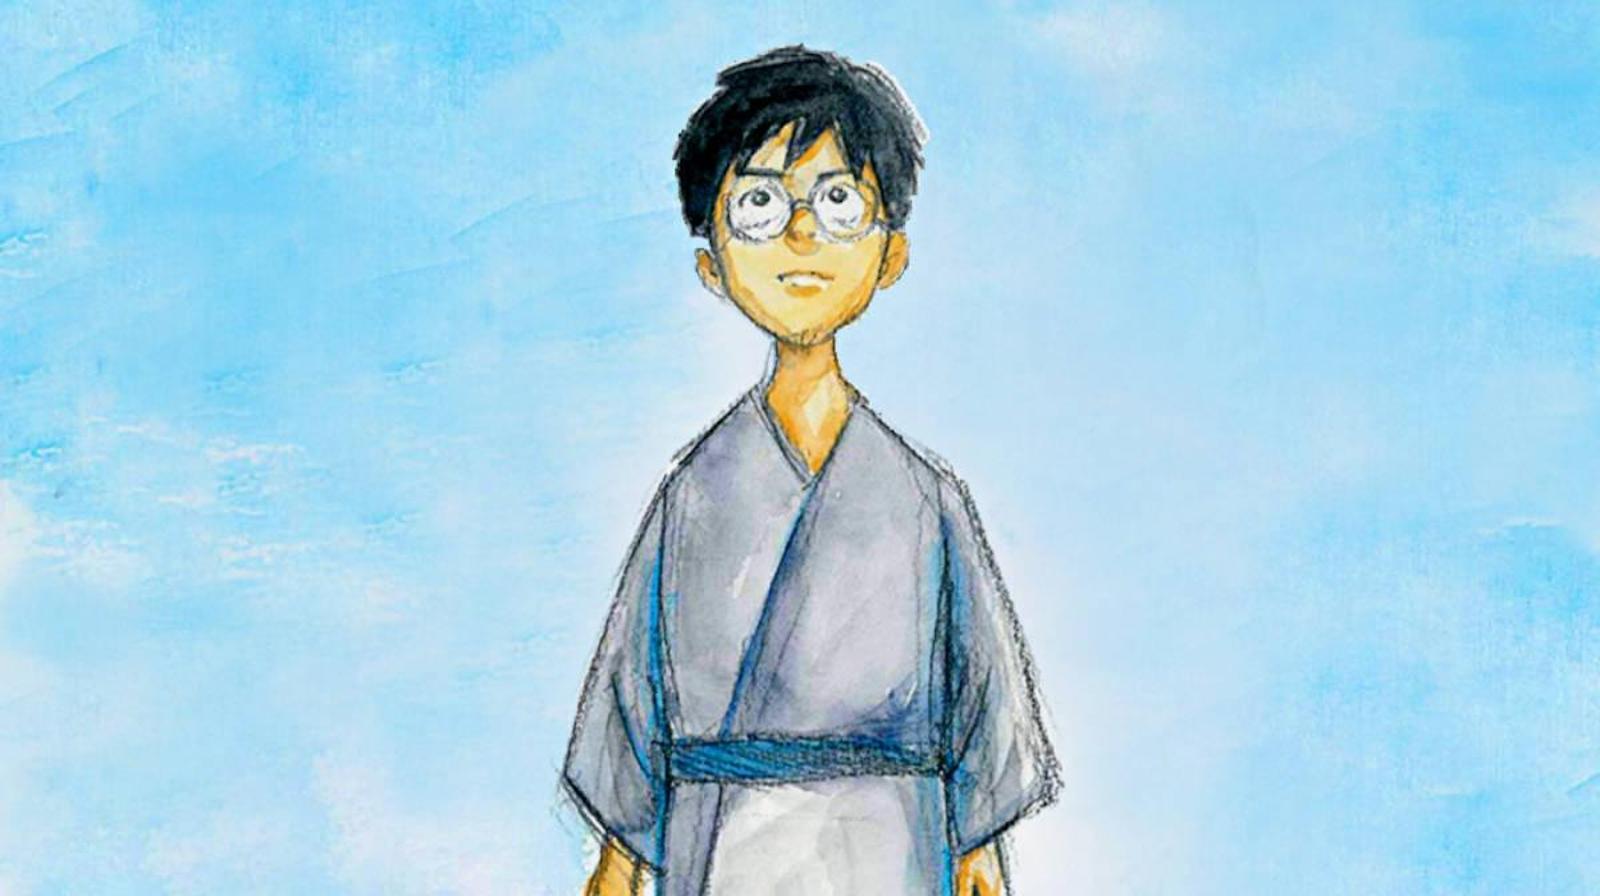 The Boy and the Heron, in ascolto il tema musicale del nuovo film di Hayao Miyazaki